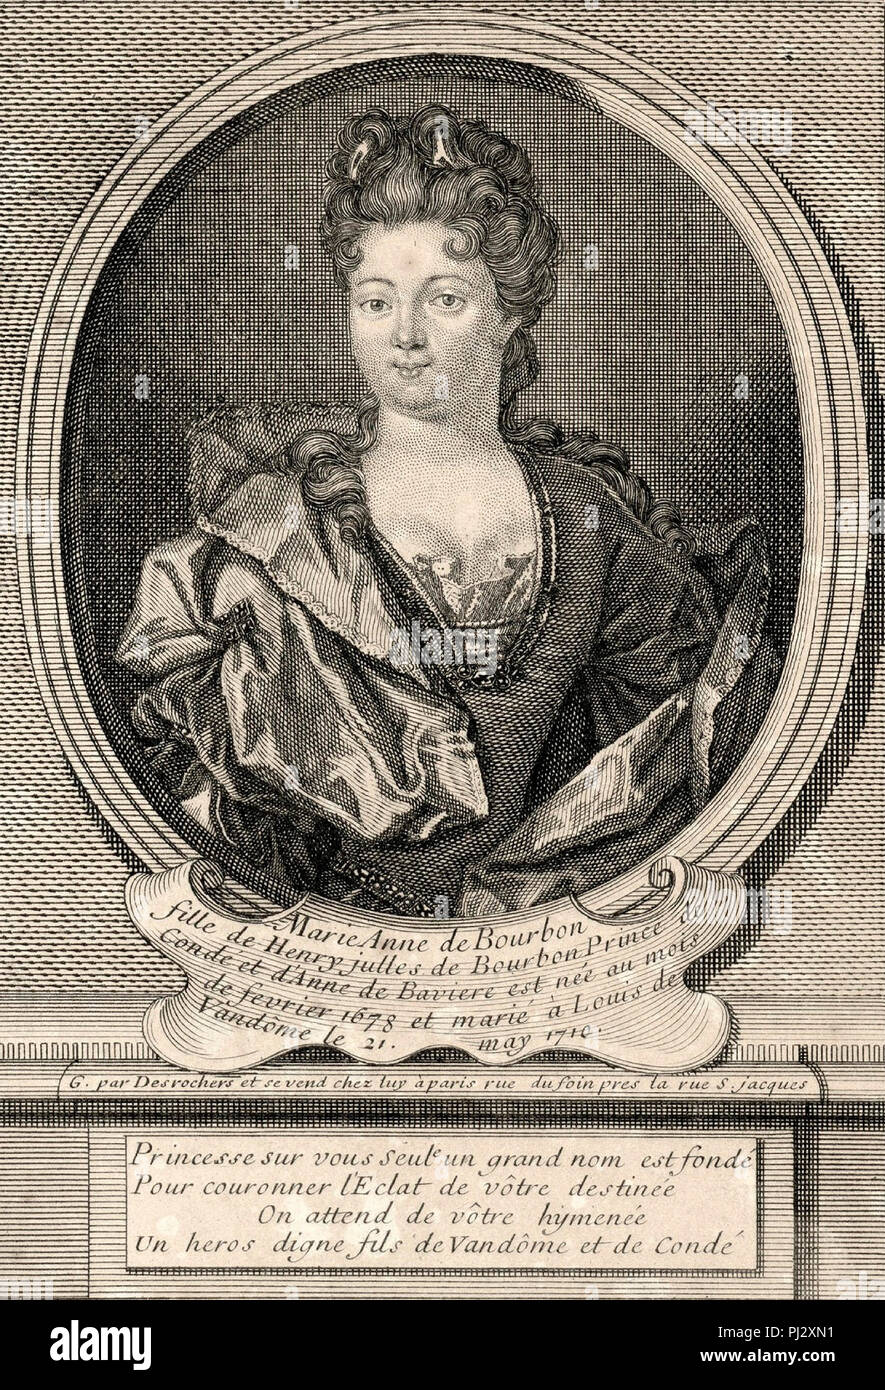 Portrait de Marie Anne de Bourbon (1678-1718) comme la Duchesse de Vendôme ; elle était une petite-fille du Grand Condé - Étienne-Jehandier Desrochers, vers 1710 Banque D'Images